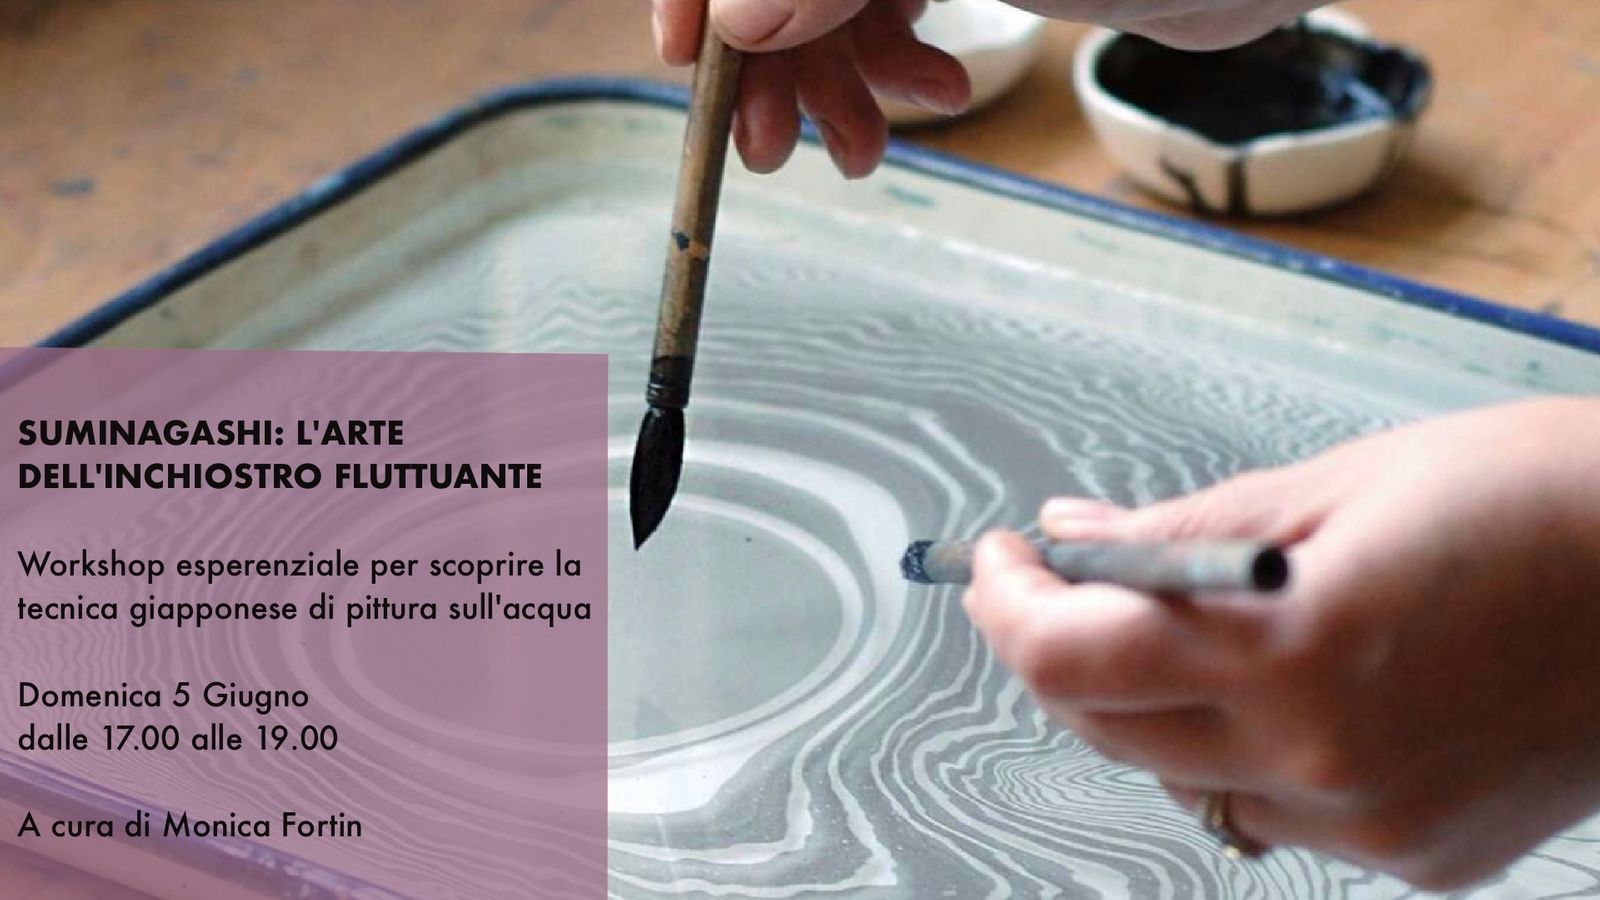 Suminagashi - L'arte dell'inchiostro fluttuante